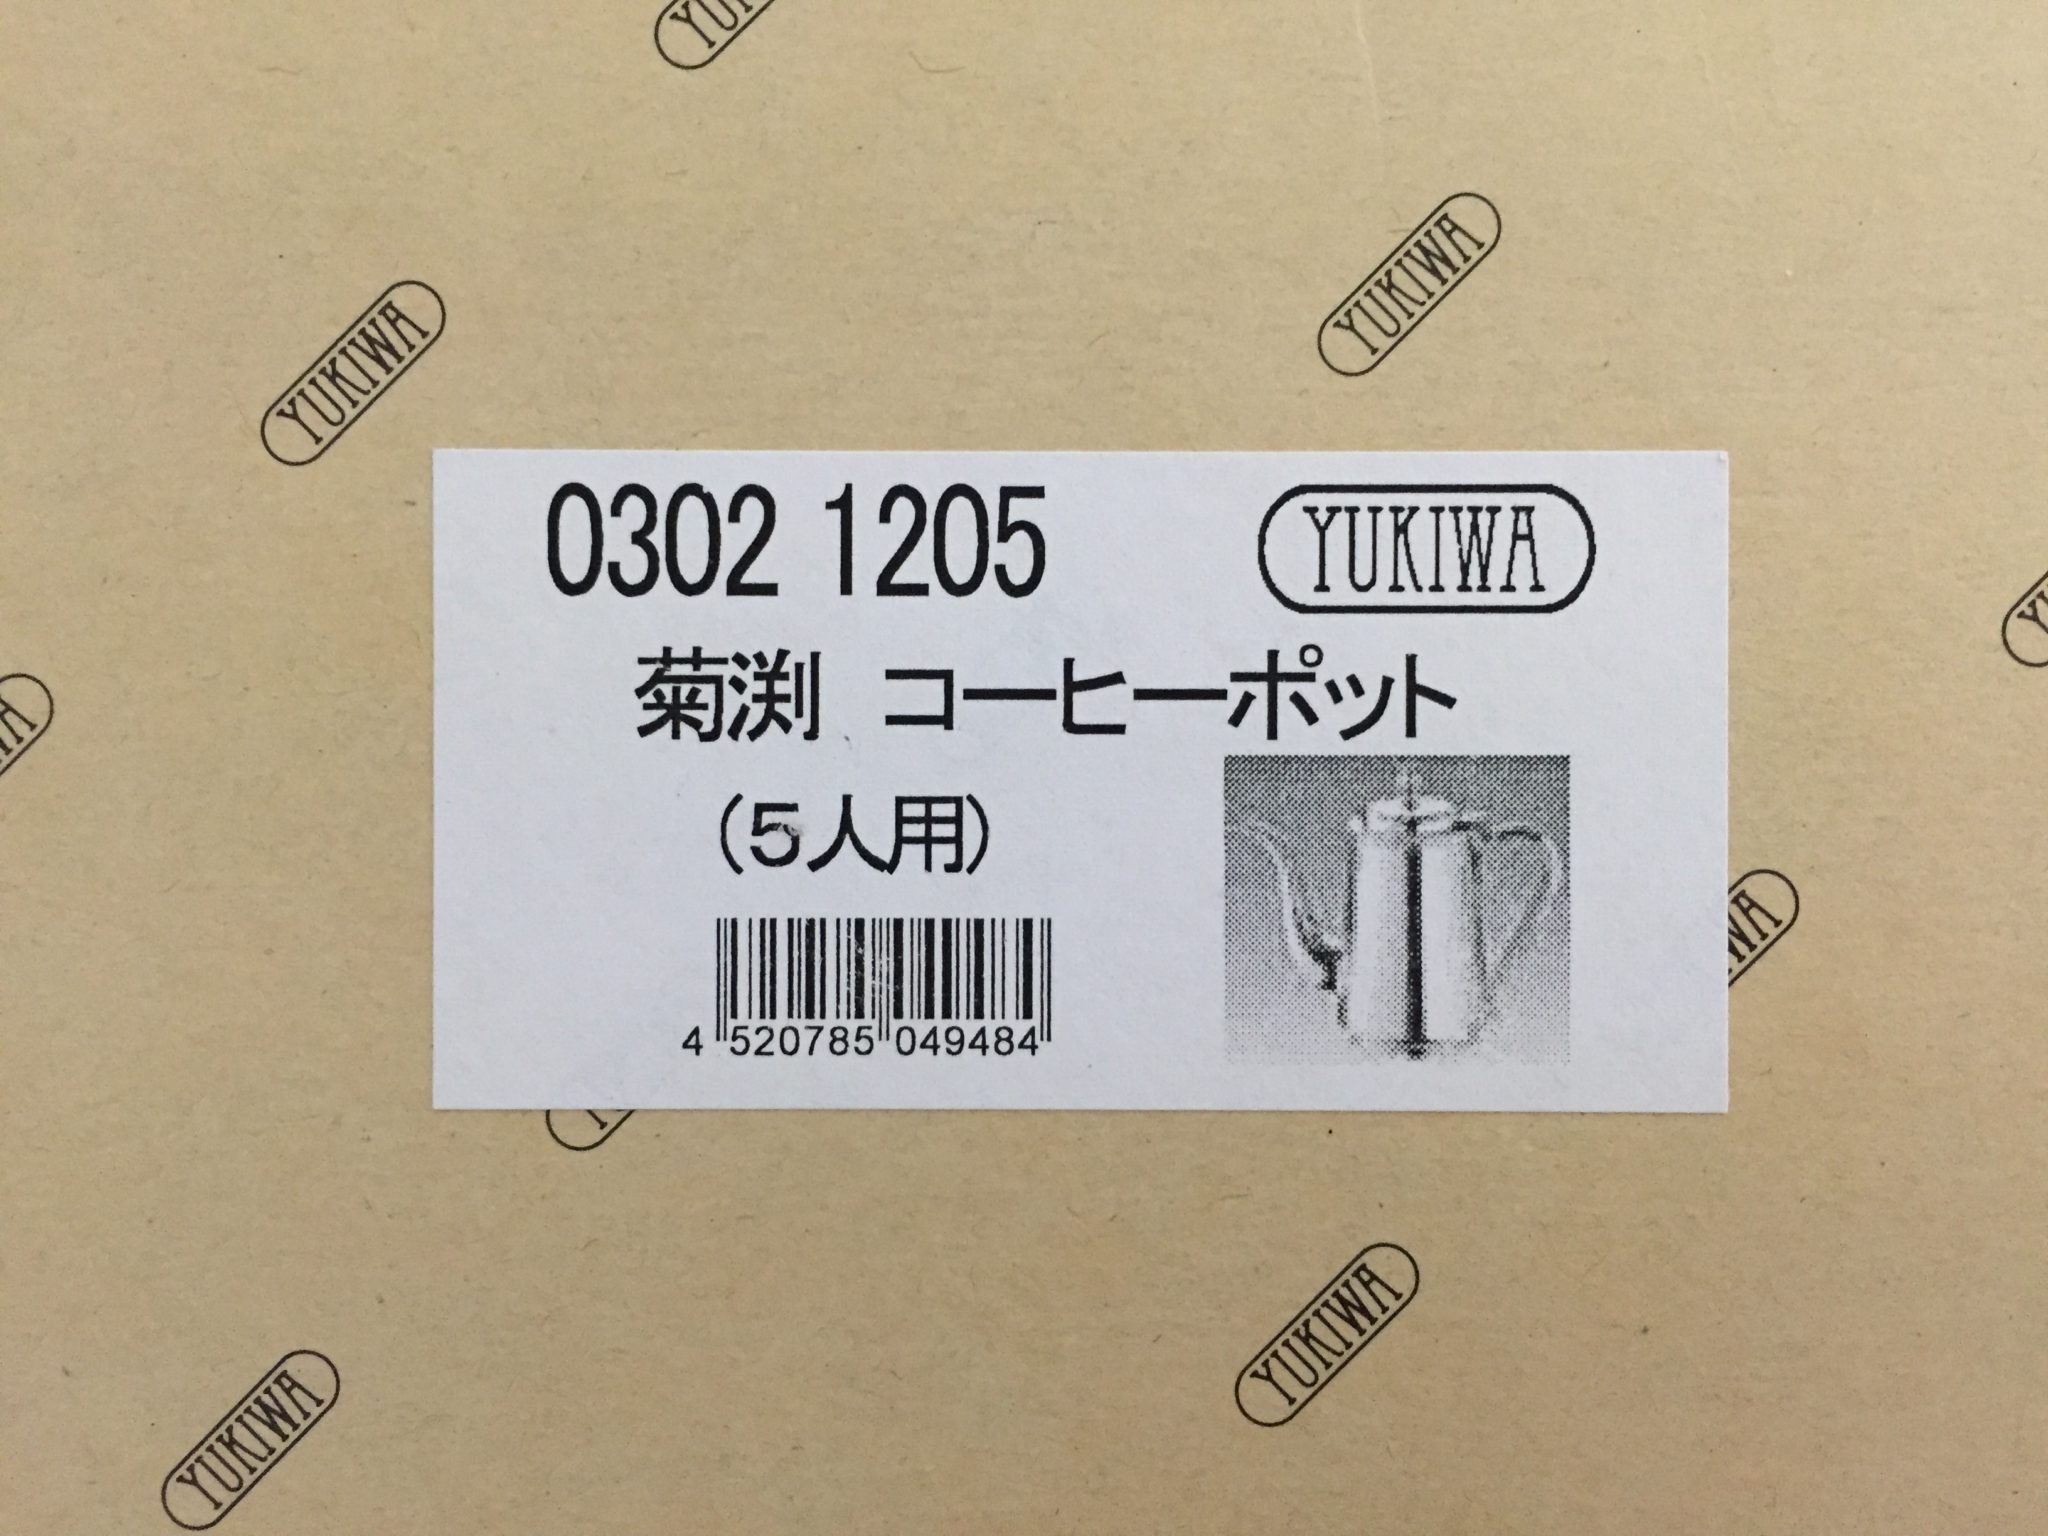 2022最新作】 【三宝産業 YUKIWA】ユキワ UK 18-8 プレーン 丸皿 26